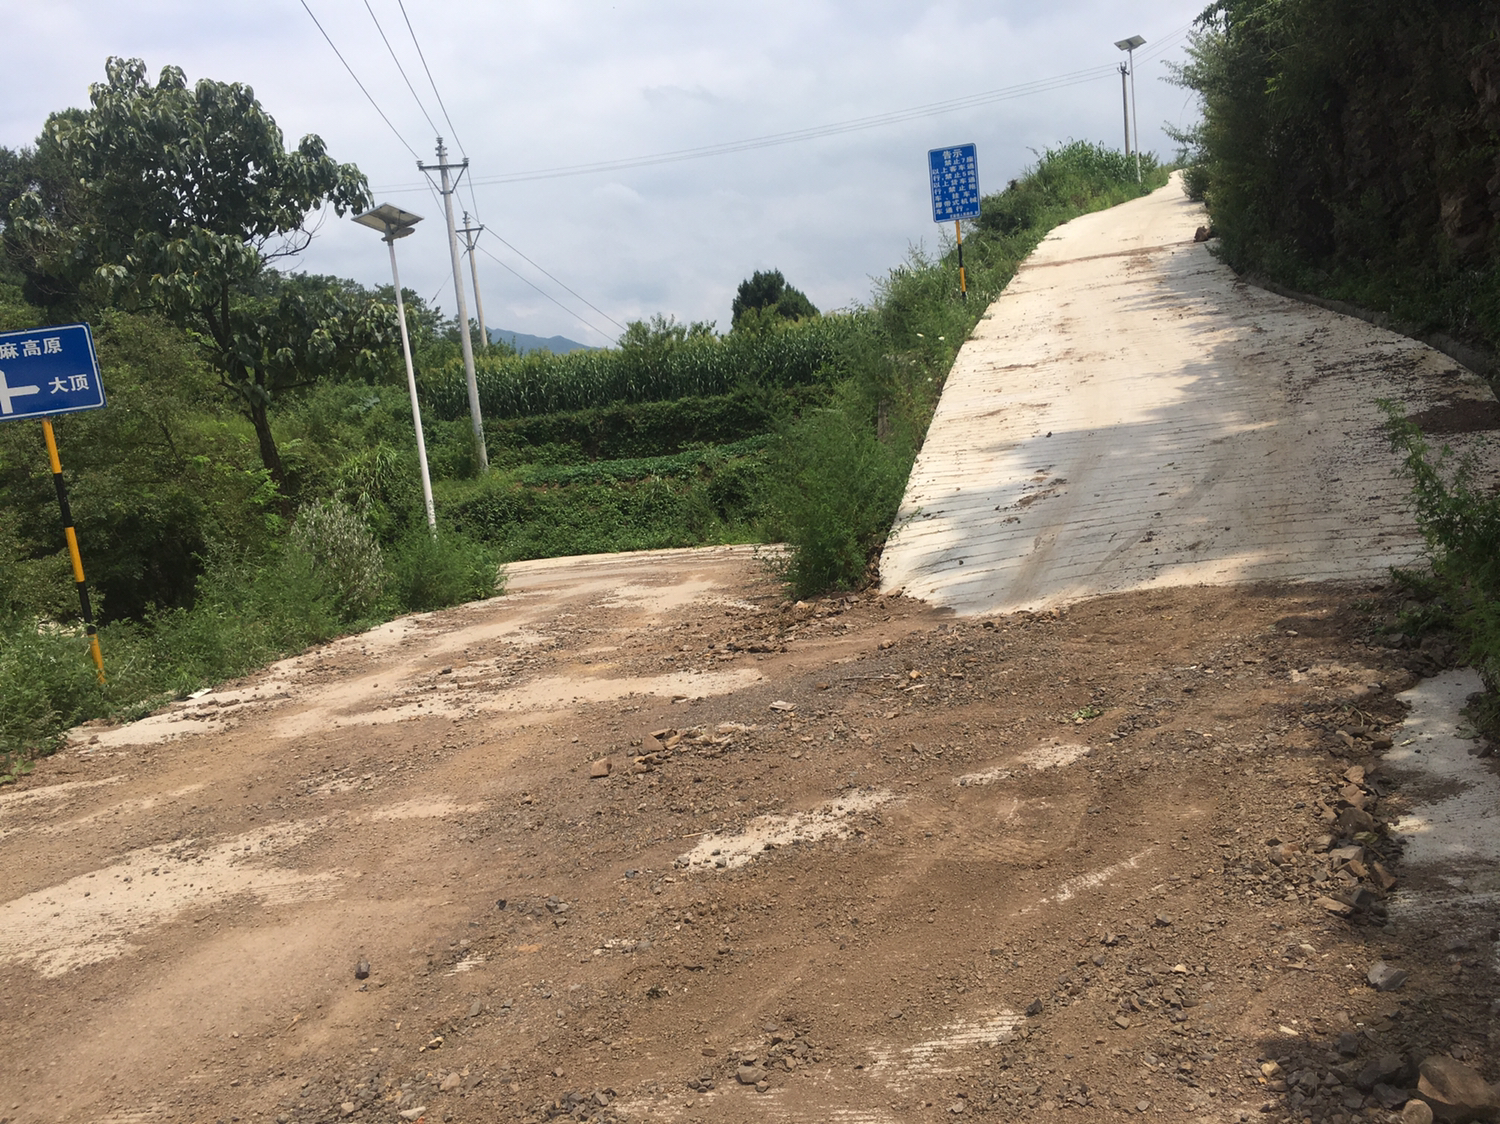 竹园公路交通与污水处理 - 汇川区委书记 - 遵义市